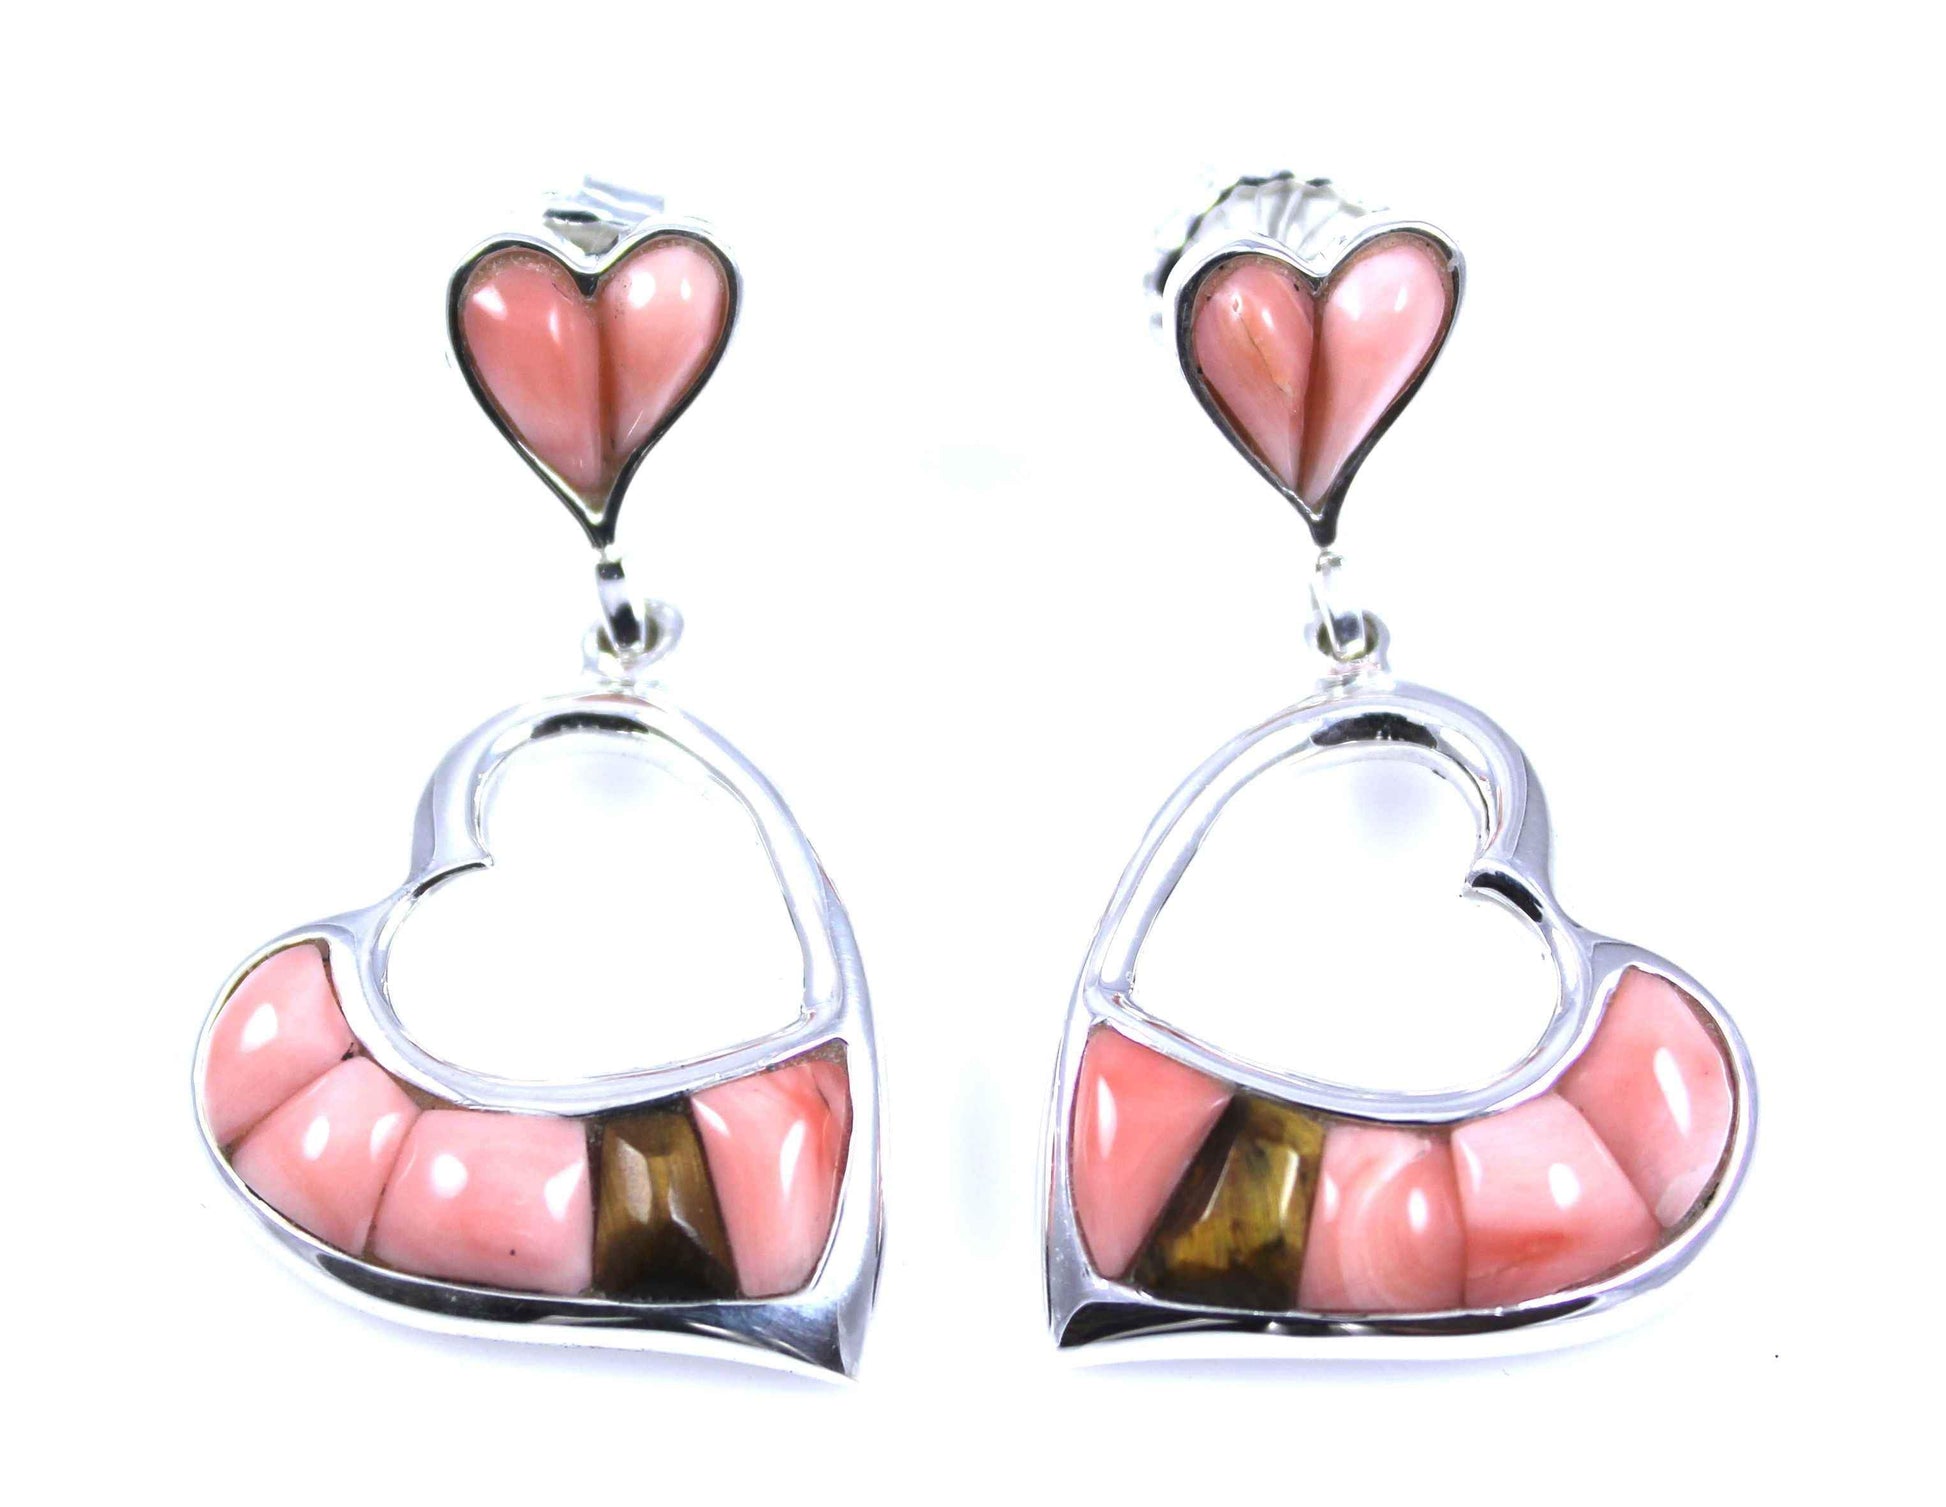 Ben Nighthorse-Heart Earrings-Sorrel Sky Gallery-Jewelry